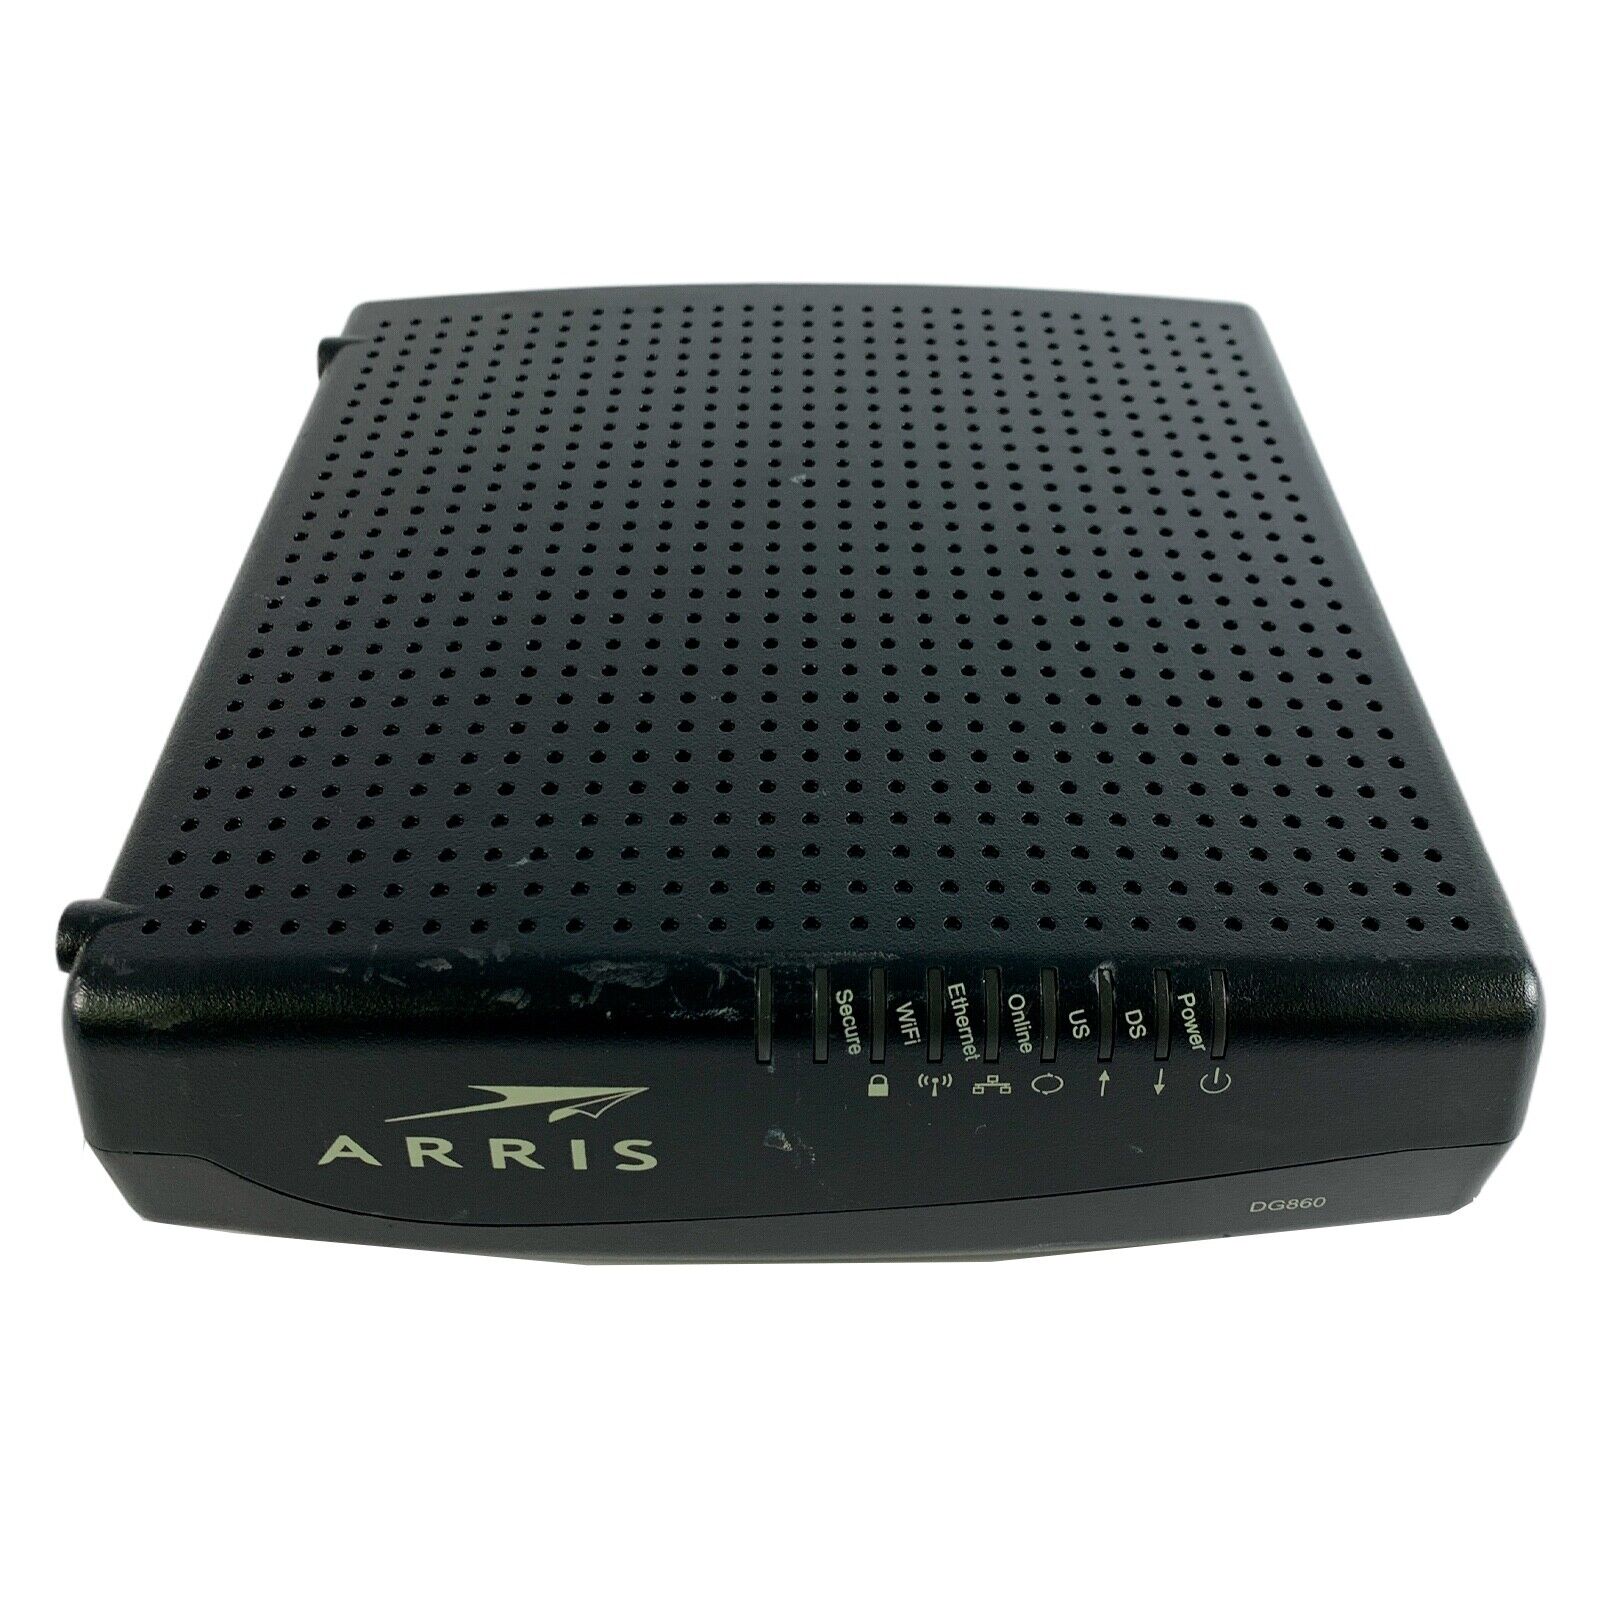 Arris DG860A Modem Docsis 3.0 Wireless Internet High Speed